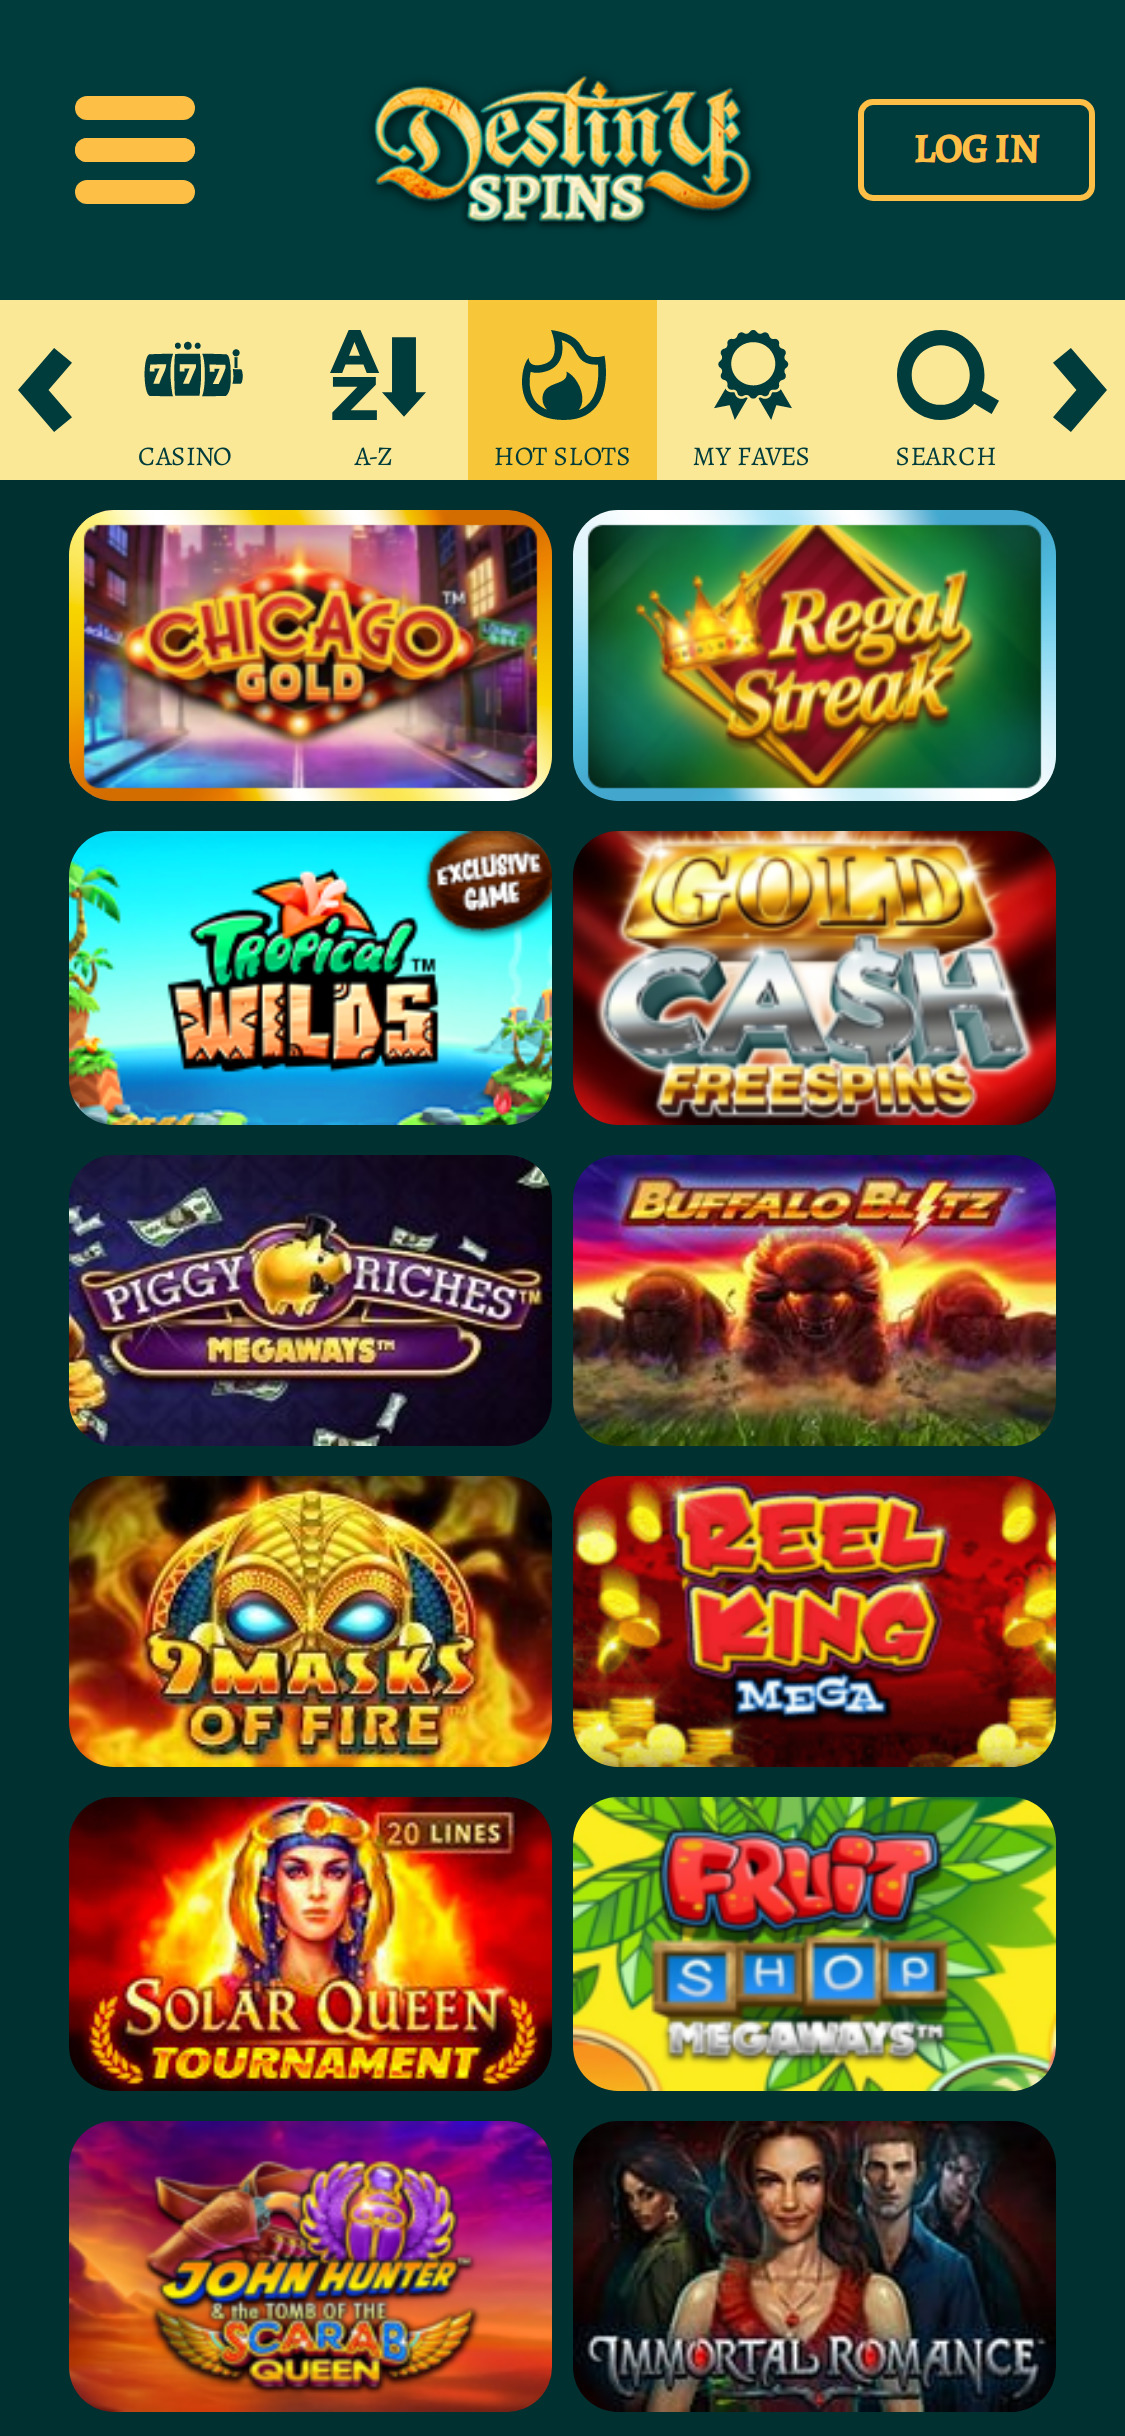 Destiny Spins Casino Mobile Games Review